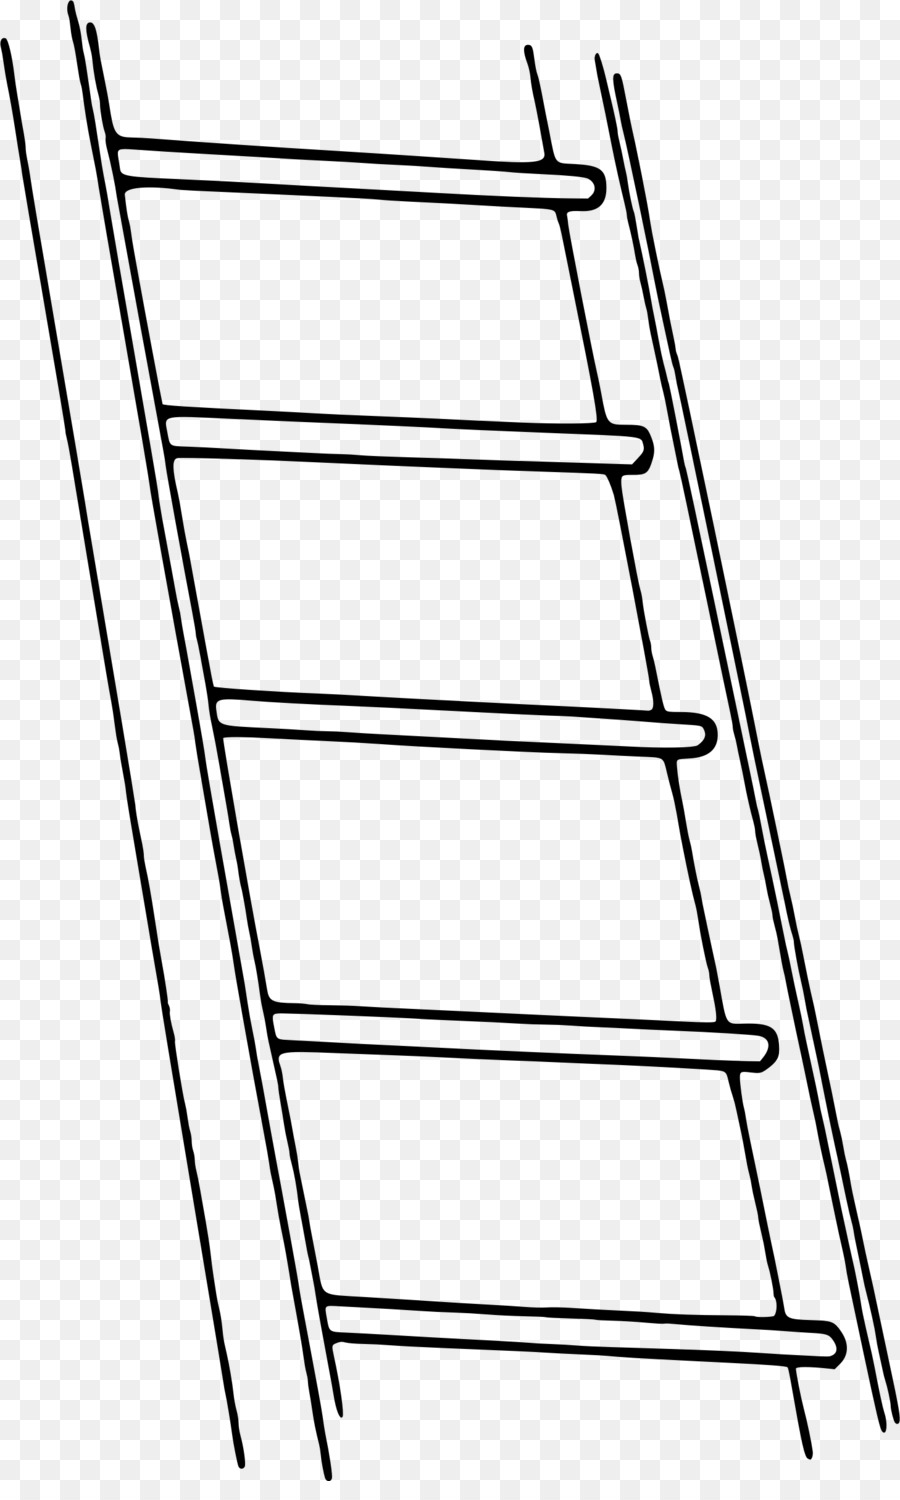 Ladder cartoon clipart.